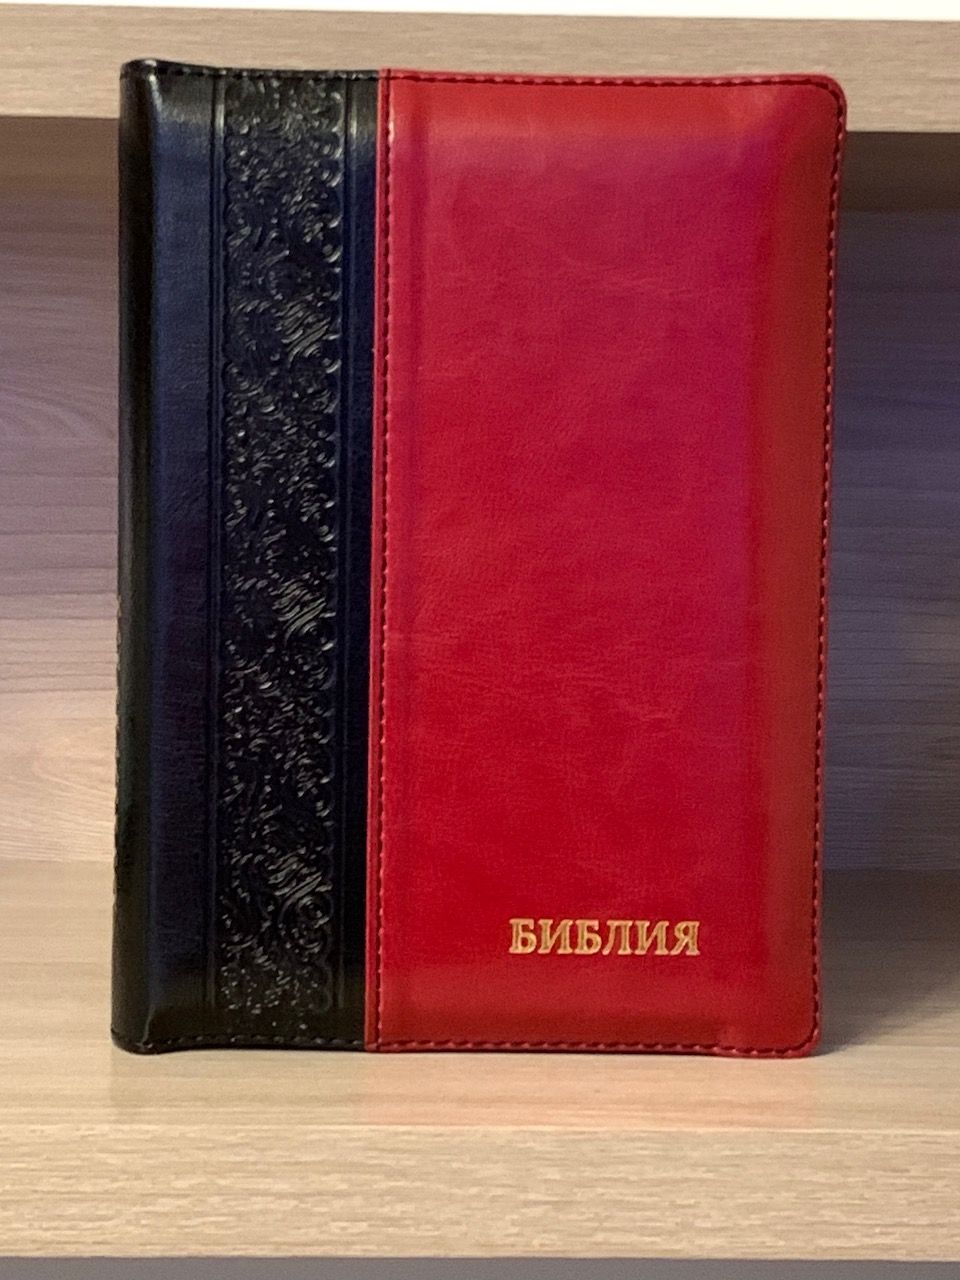 БИБЛИЯ 046DTzti формат, переплет из искусственной кожи на молнии с индексами, надпись золотом "Библия", цвет черный/красный вертикальный, средний формат, 132*182 мм, цветные карты, шрифт 12 кегель